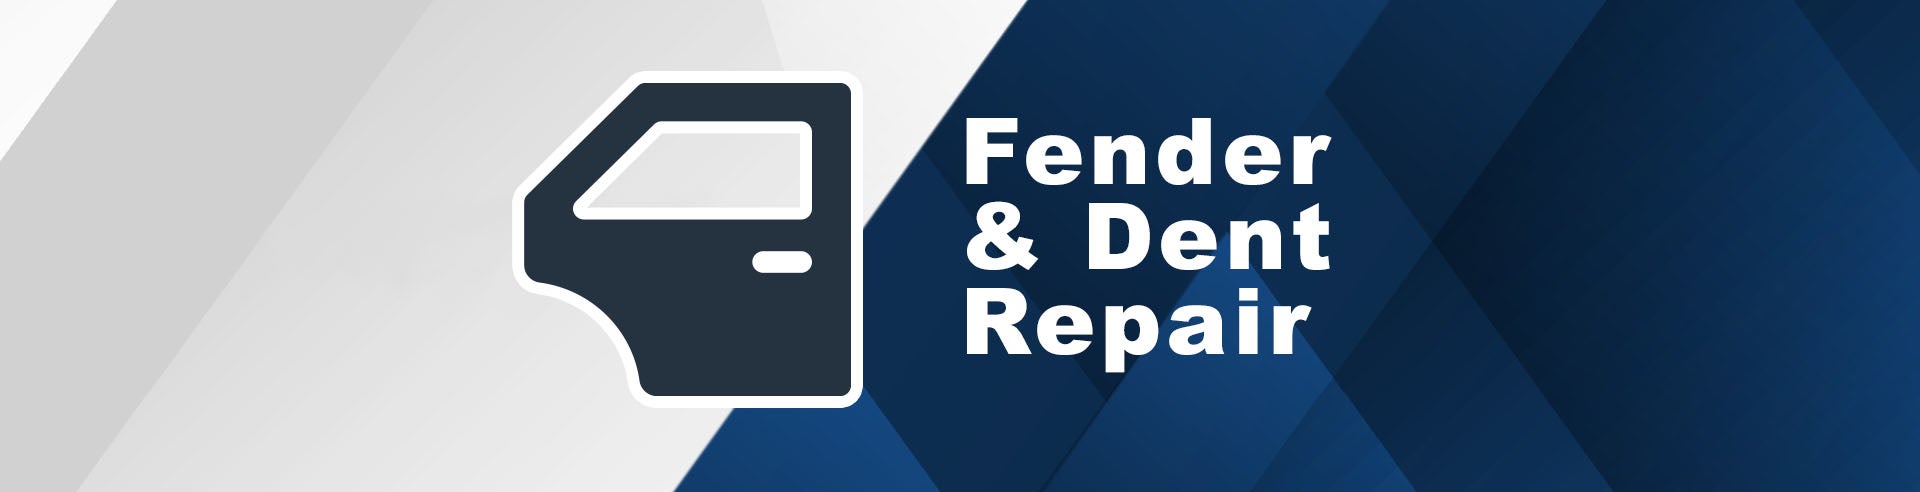 Fender & Dent Repair